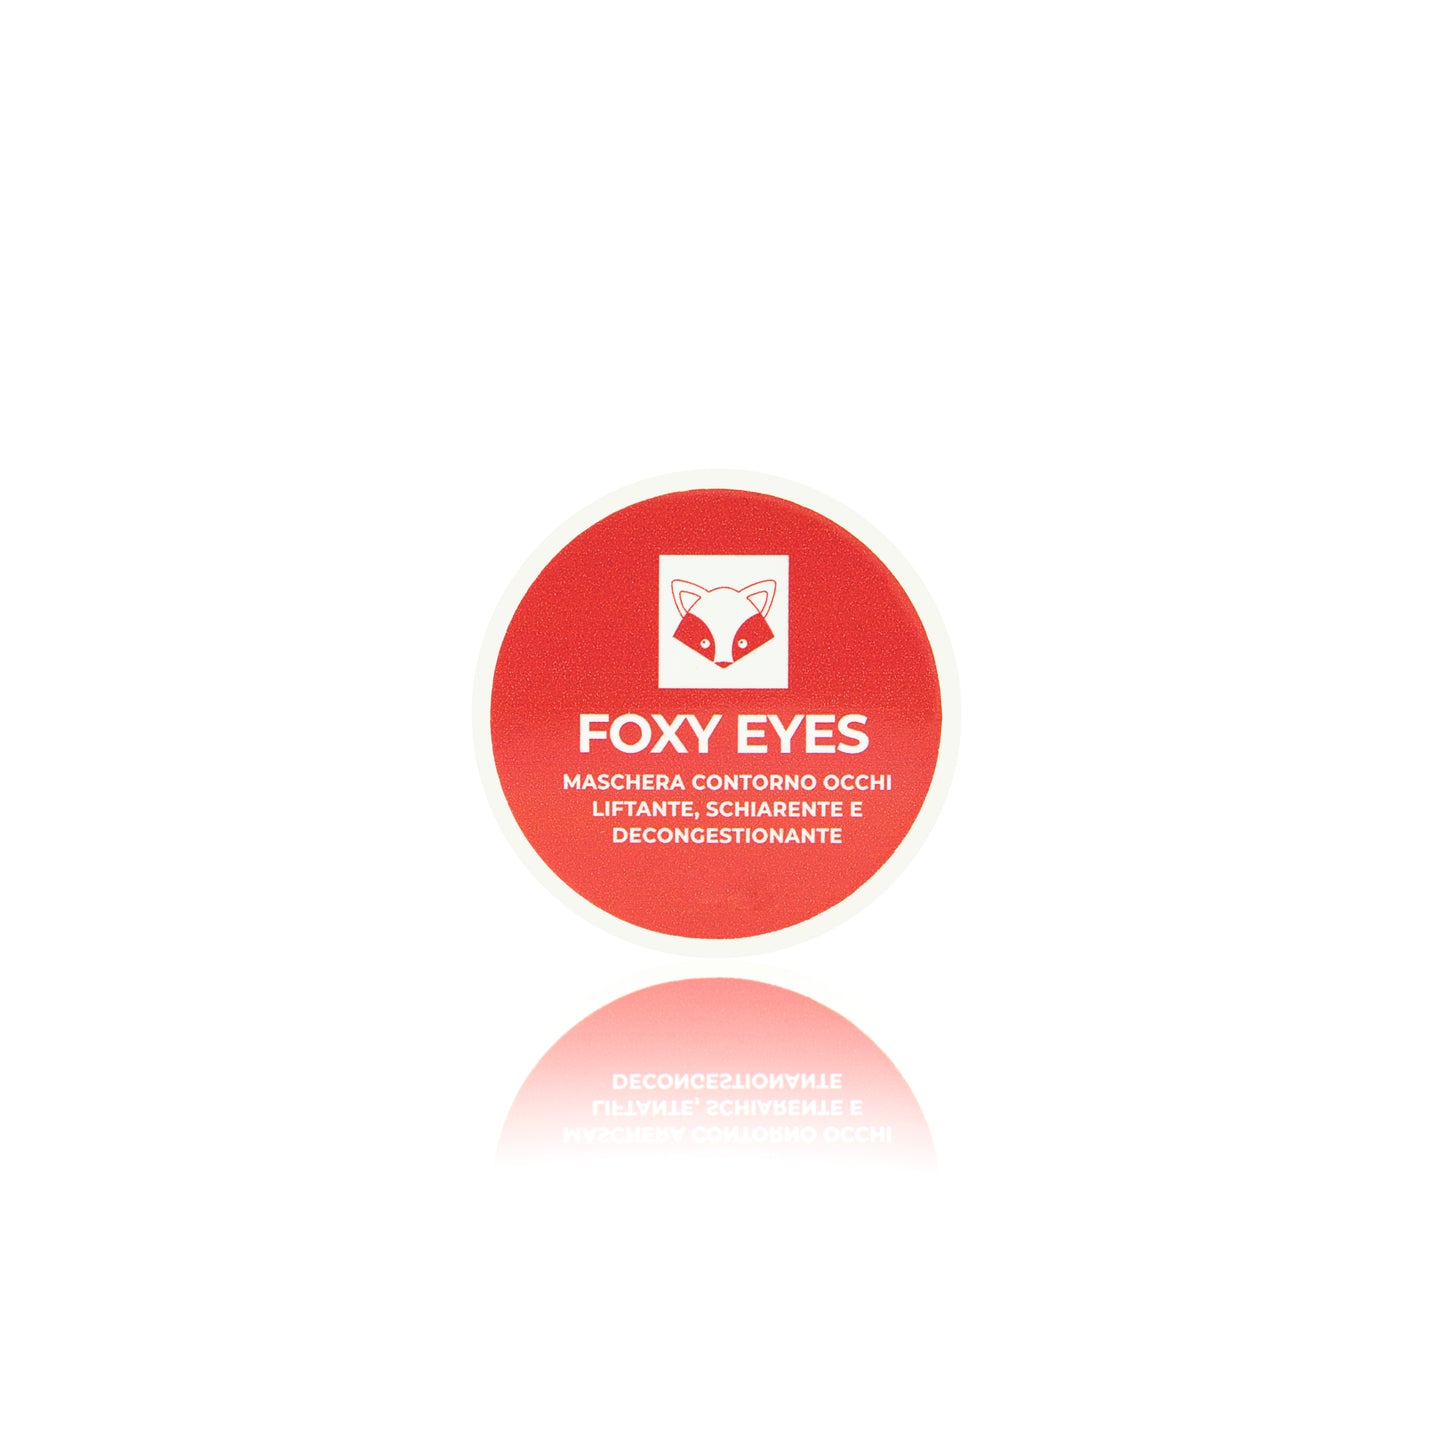 Foxy eyes - eye contour mask